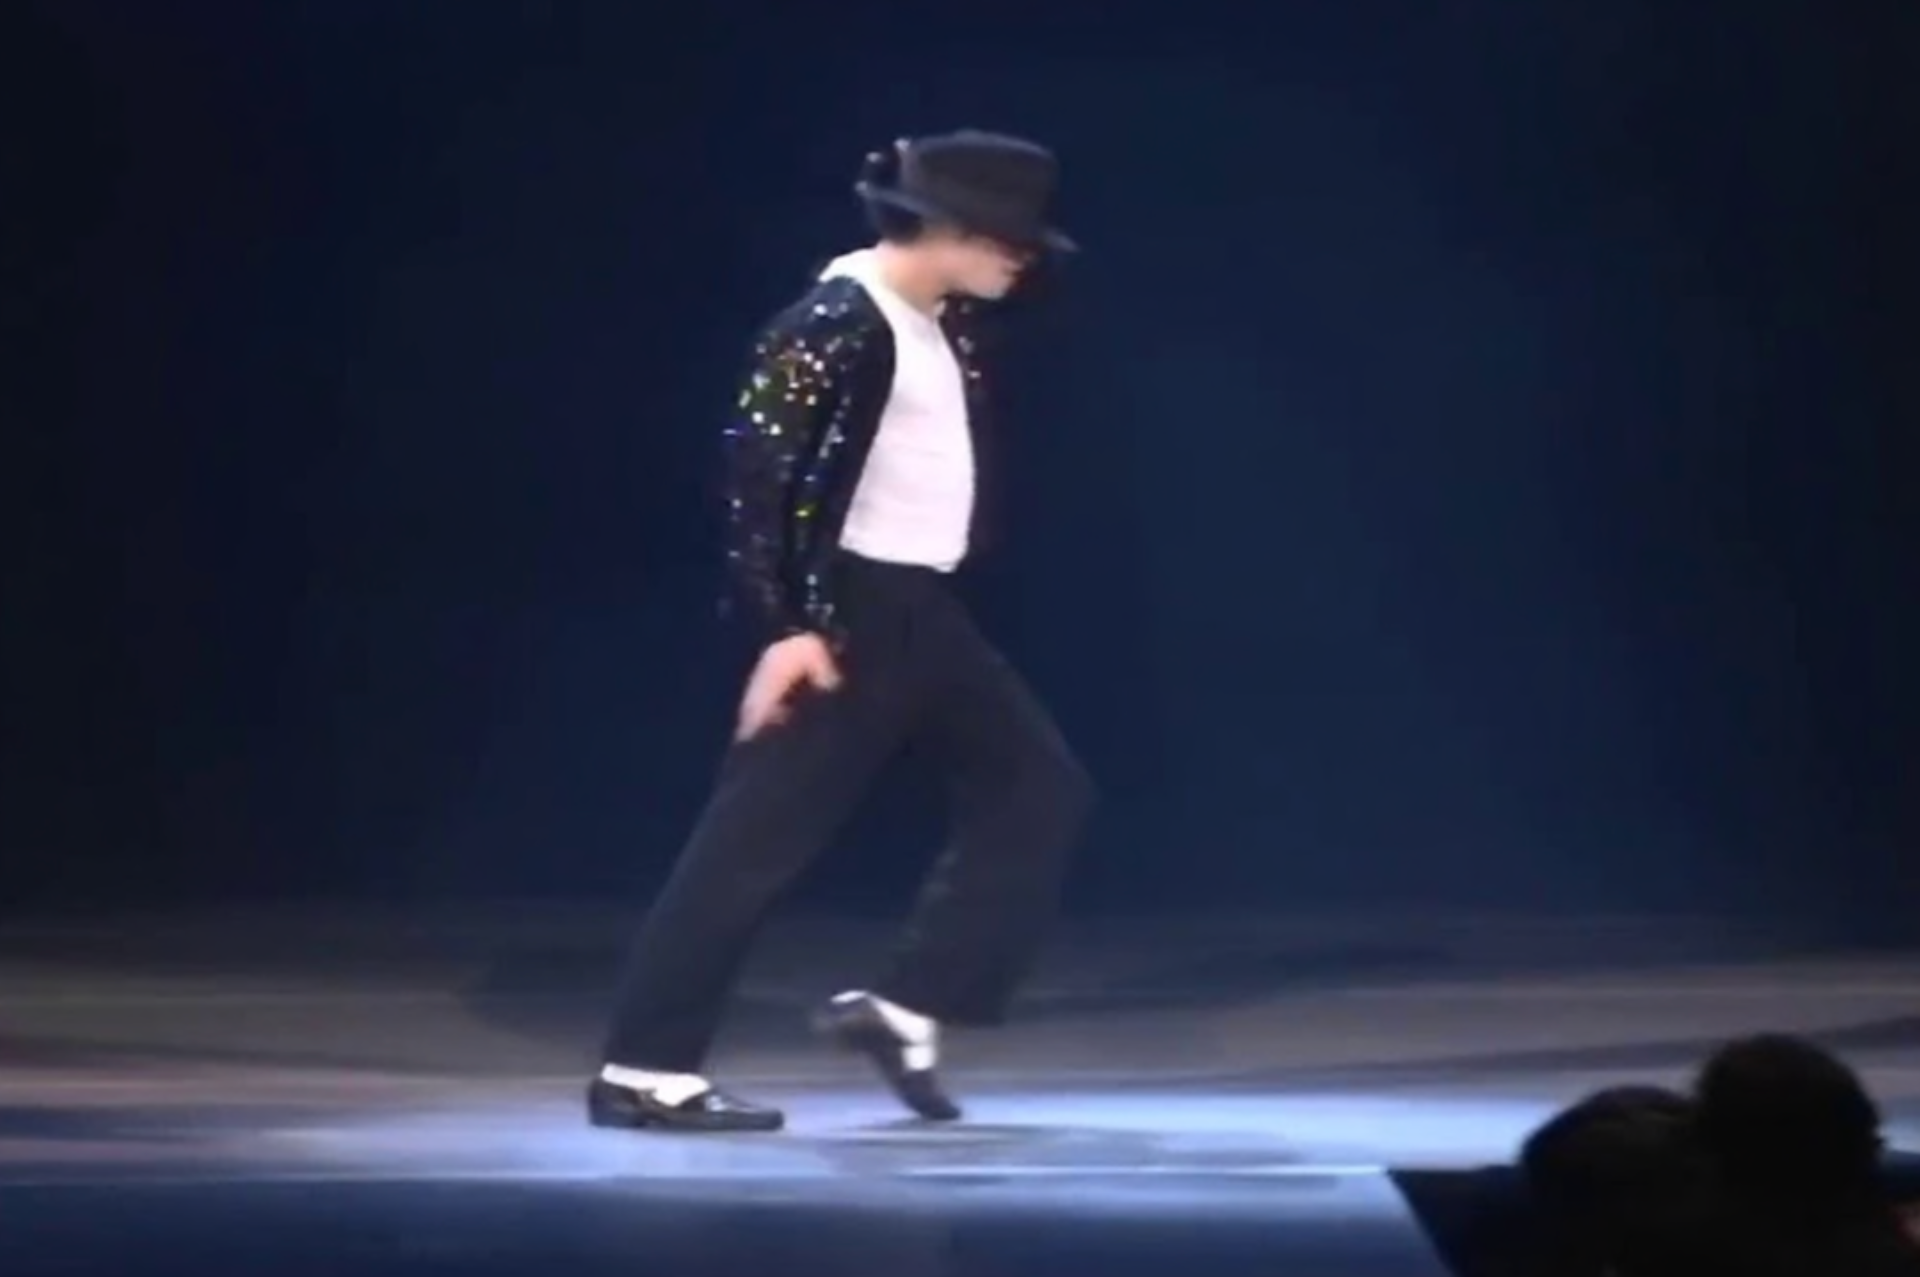 Subastarán sombrero del 'Moonwalk' de Michael Jackson